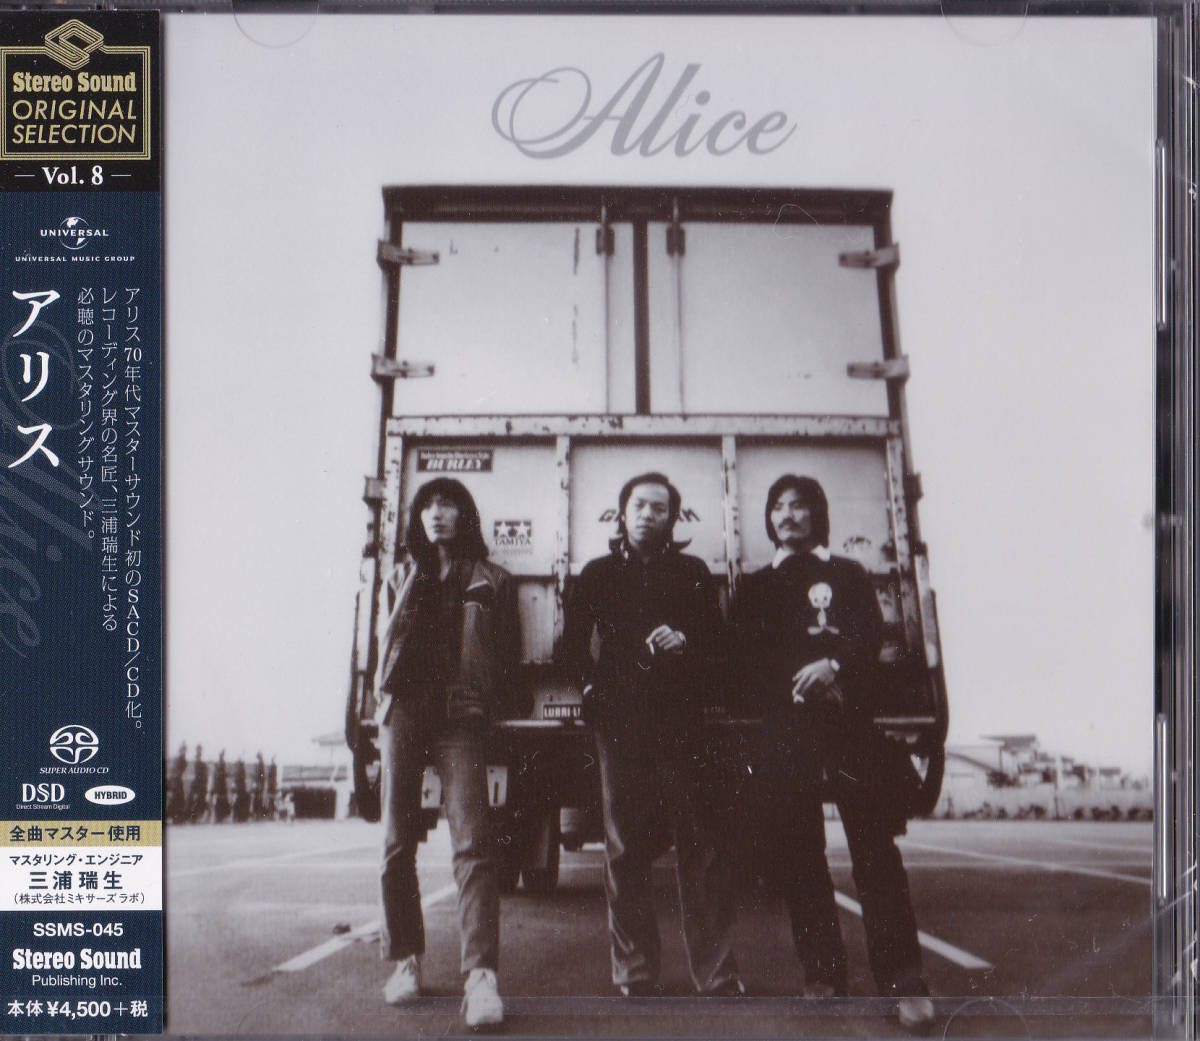 【送料込即決】未開封新品 「アリス」Stereo Sound ORIGINAL SELECTION Vol.8 ■ SACD/CDハイブリッド盤 ■ 谷村新司